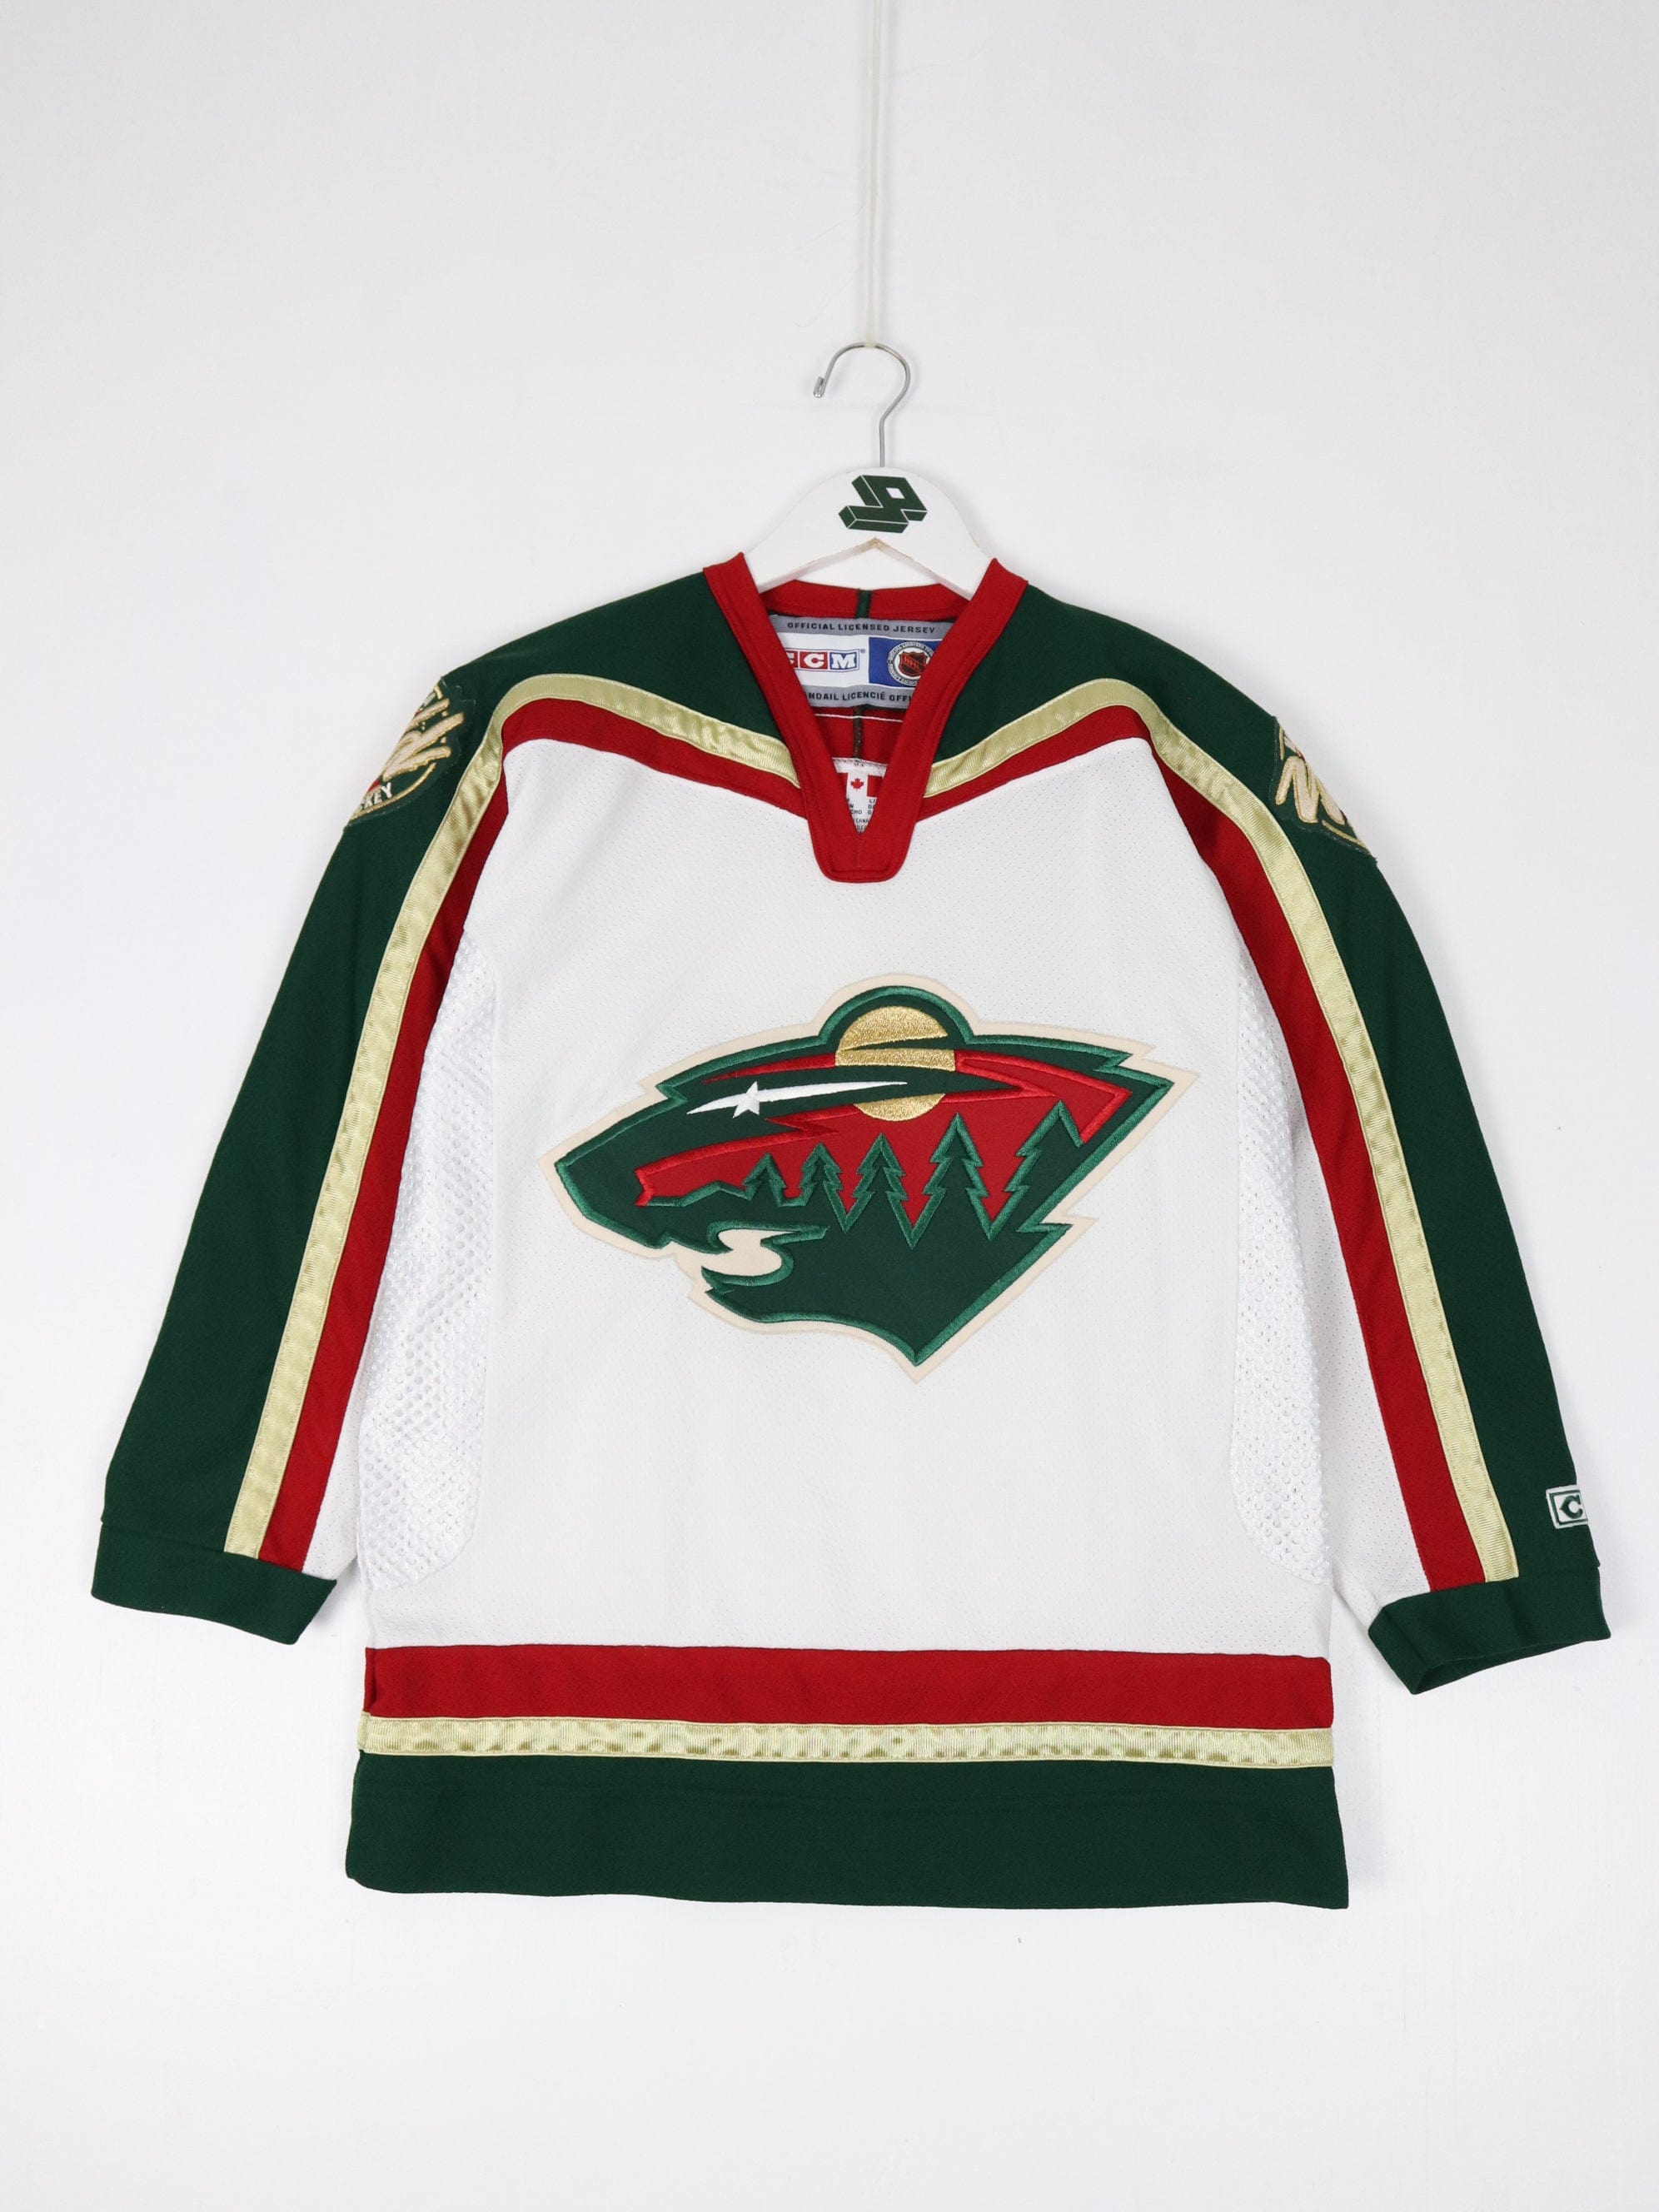 Vancouver Canucks Blank Vintage CCM Hockey Jersey